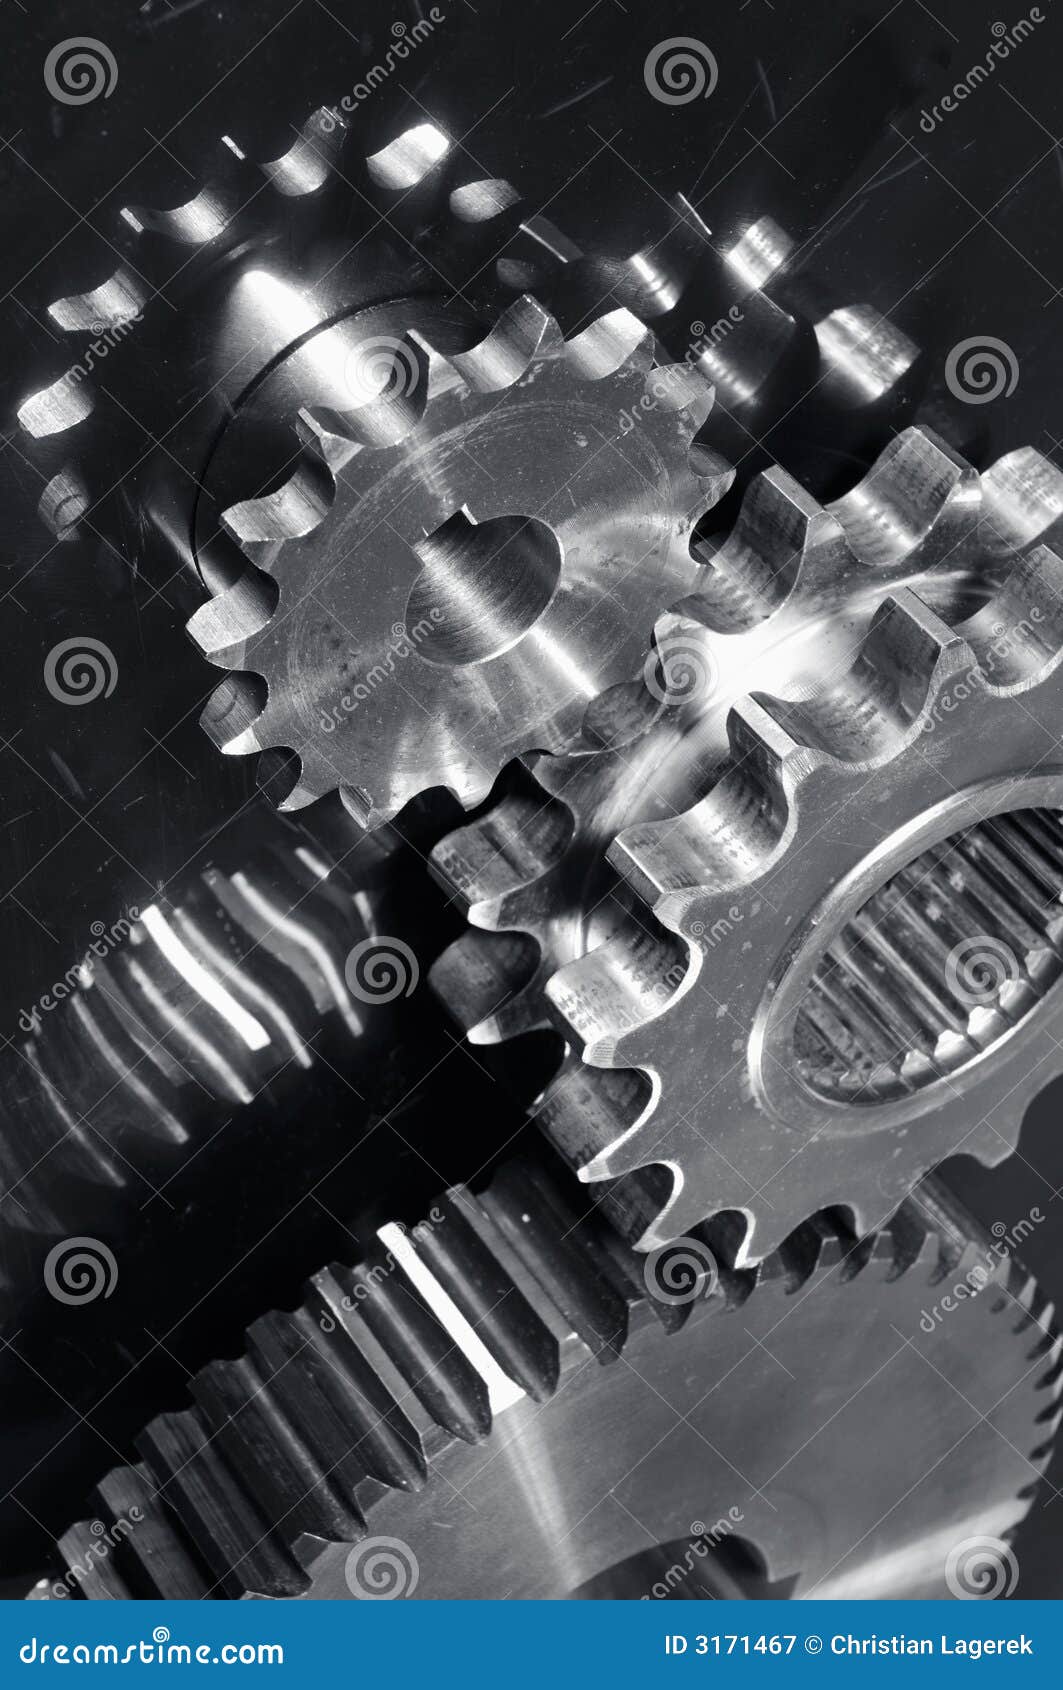 gear machinery in titanium